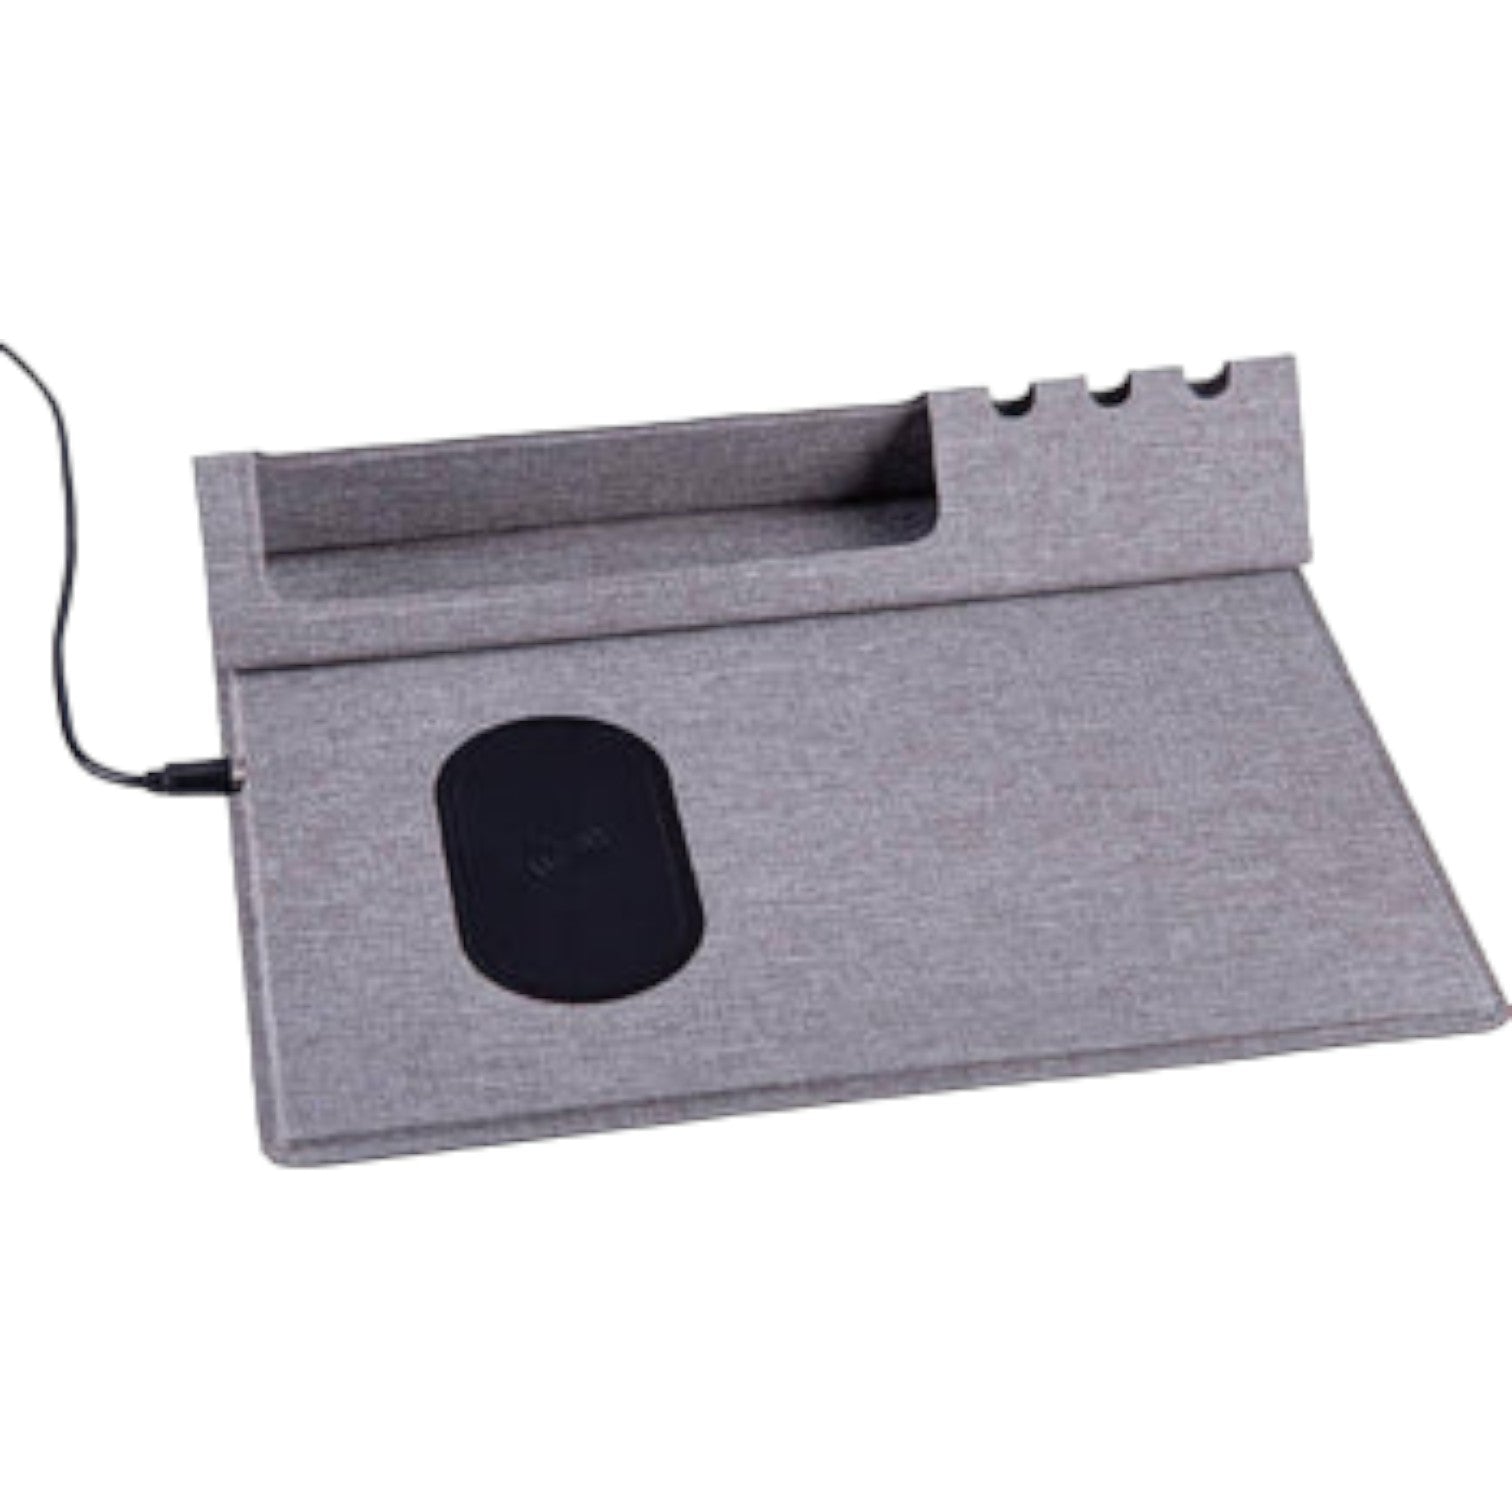 10W Wireless Mouse Pad & Desk Organizer